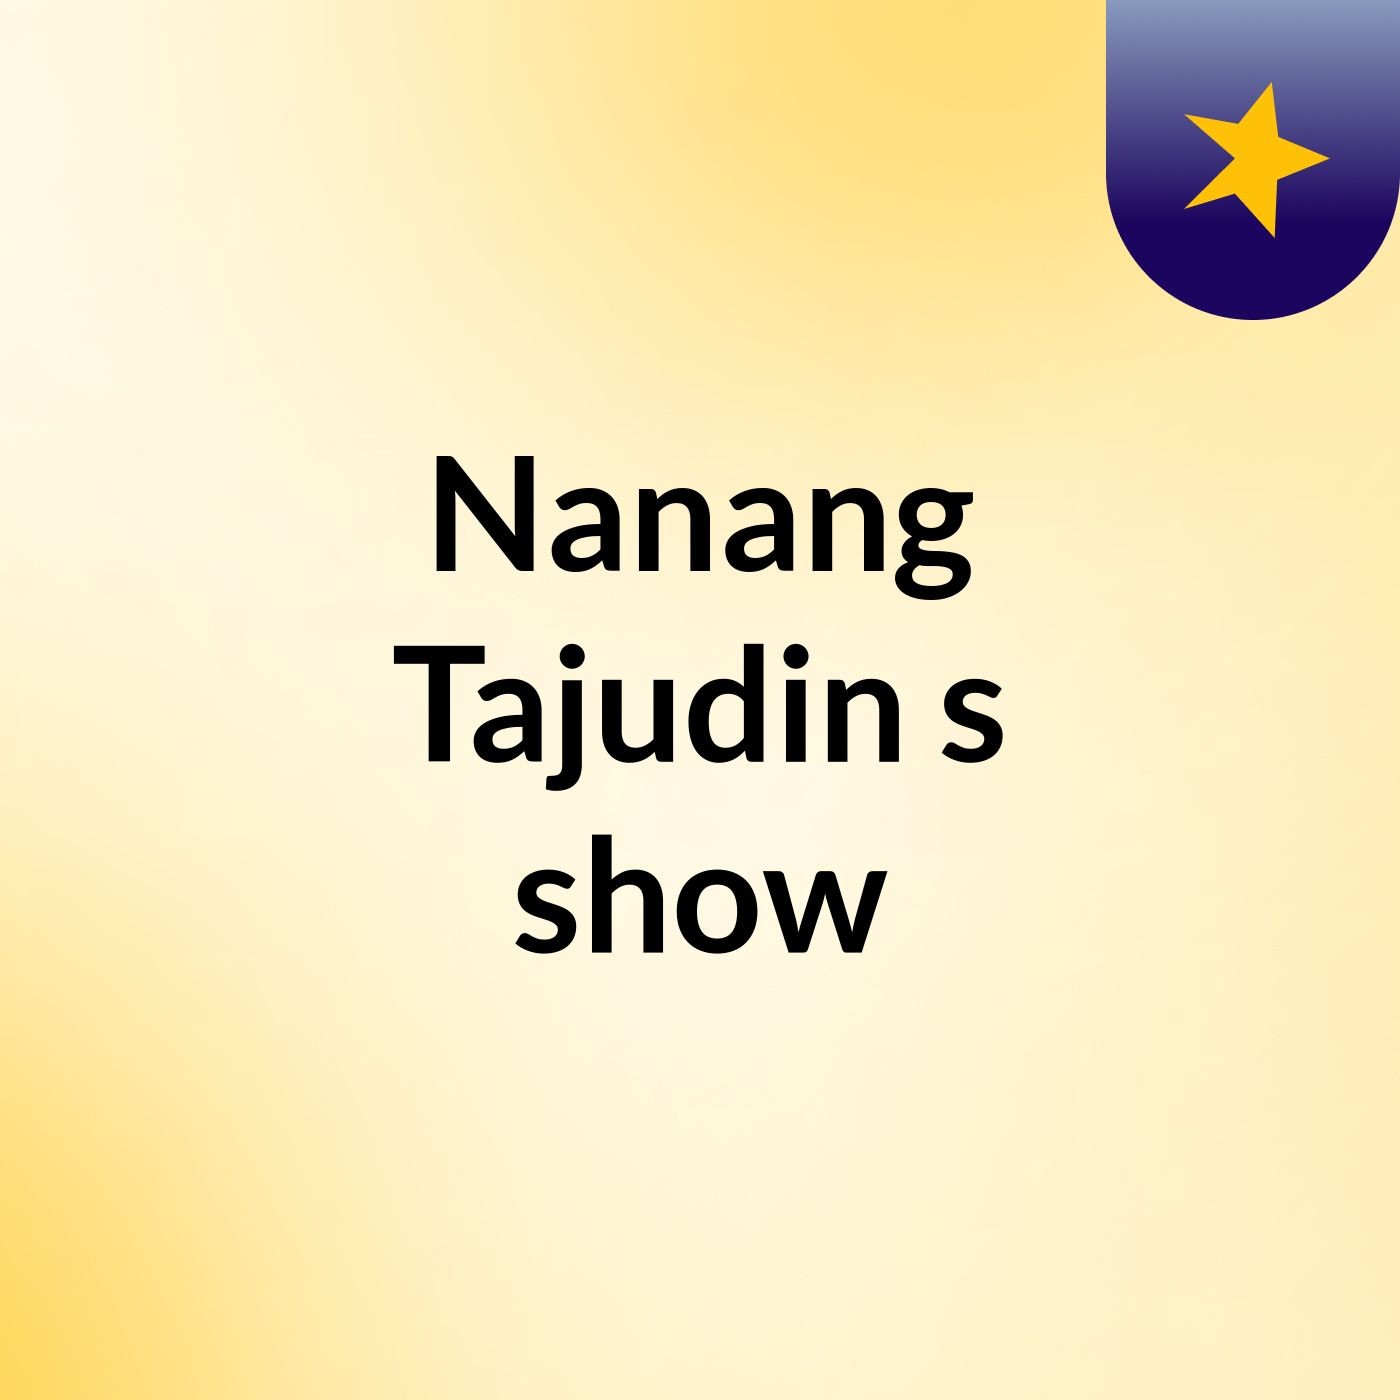 Nanang Tajudin's show